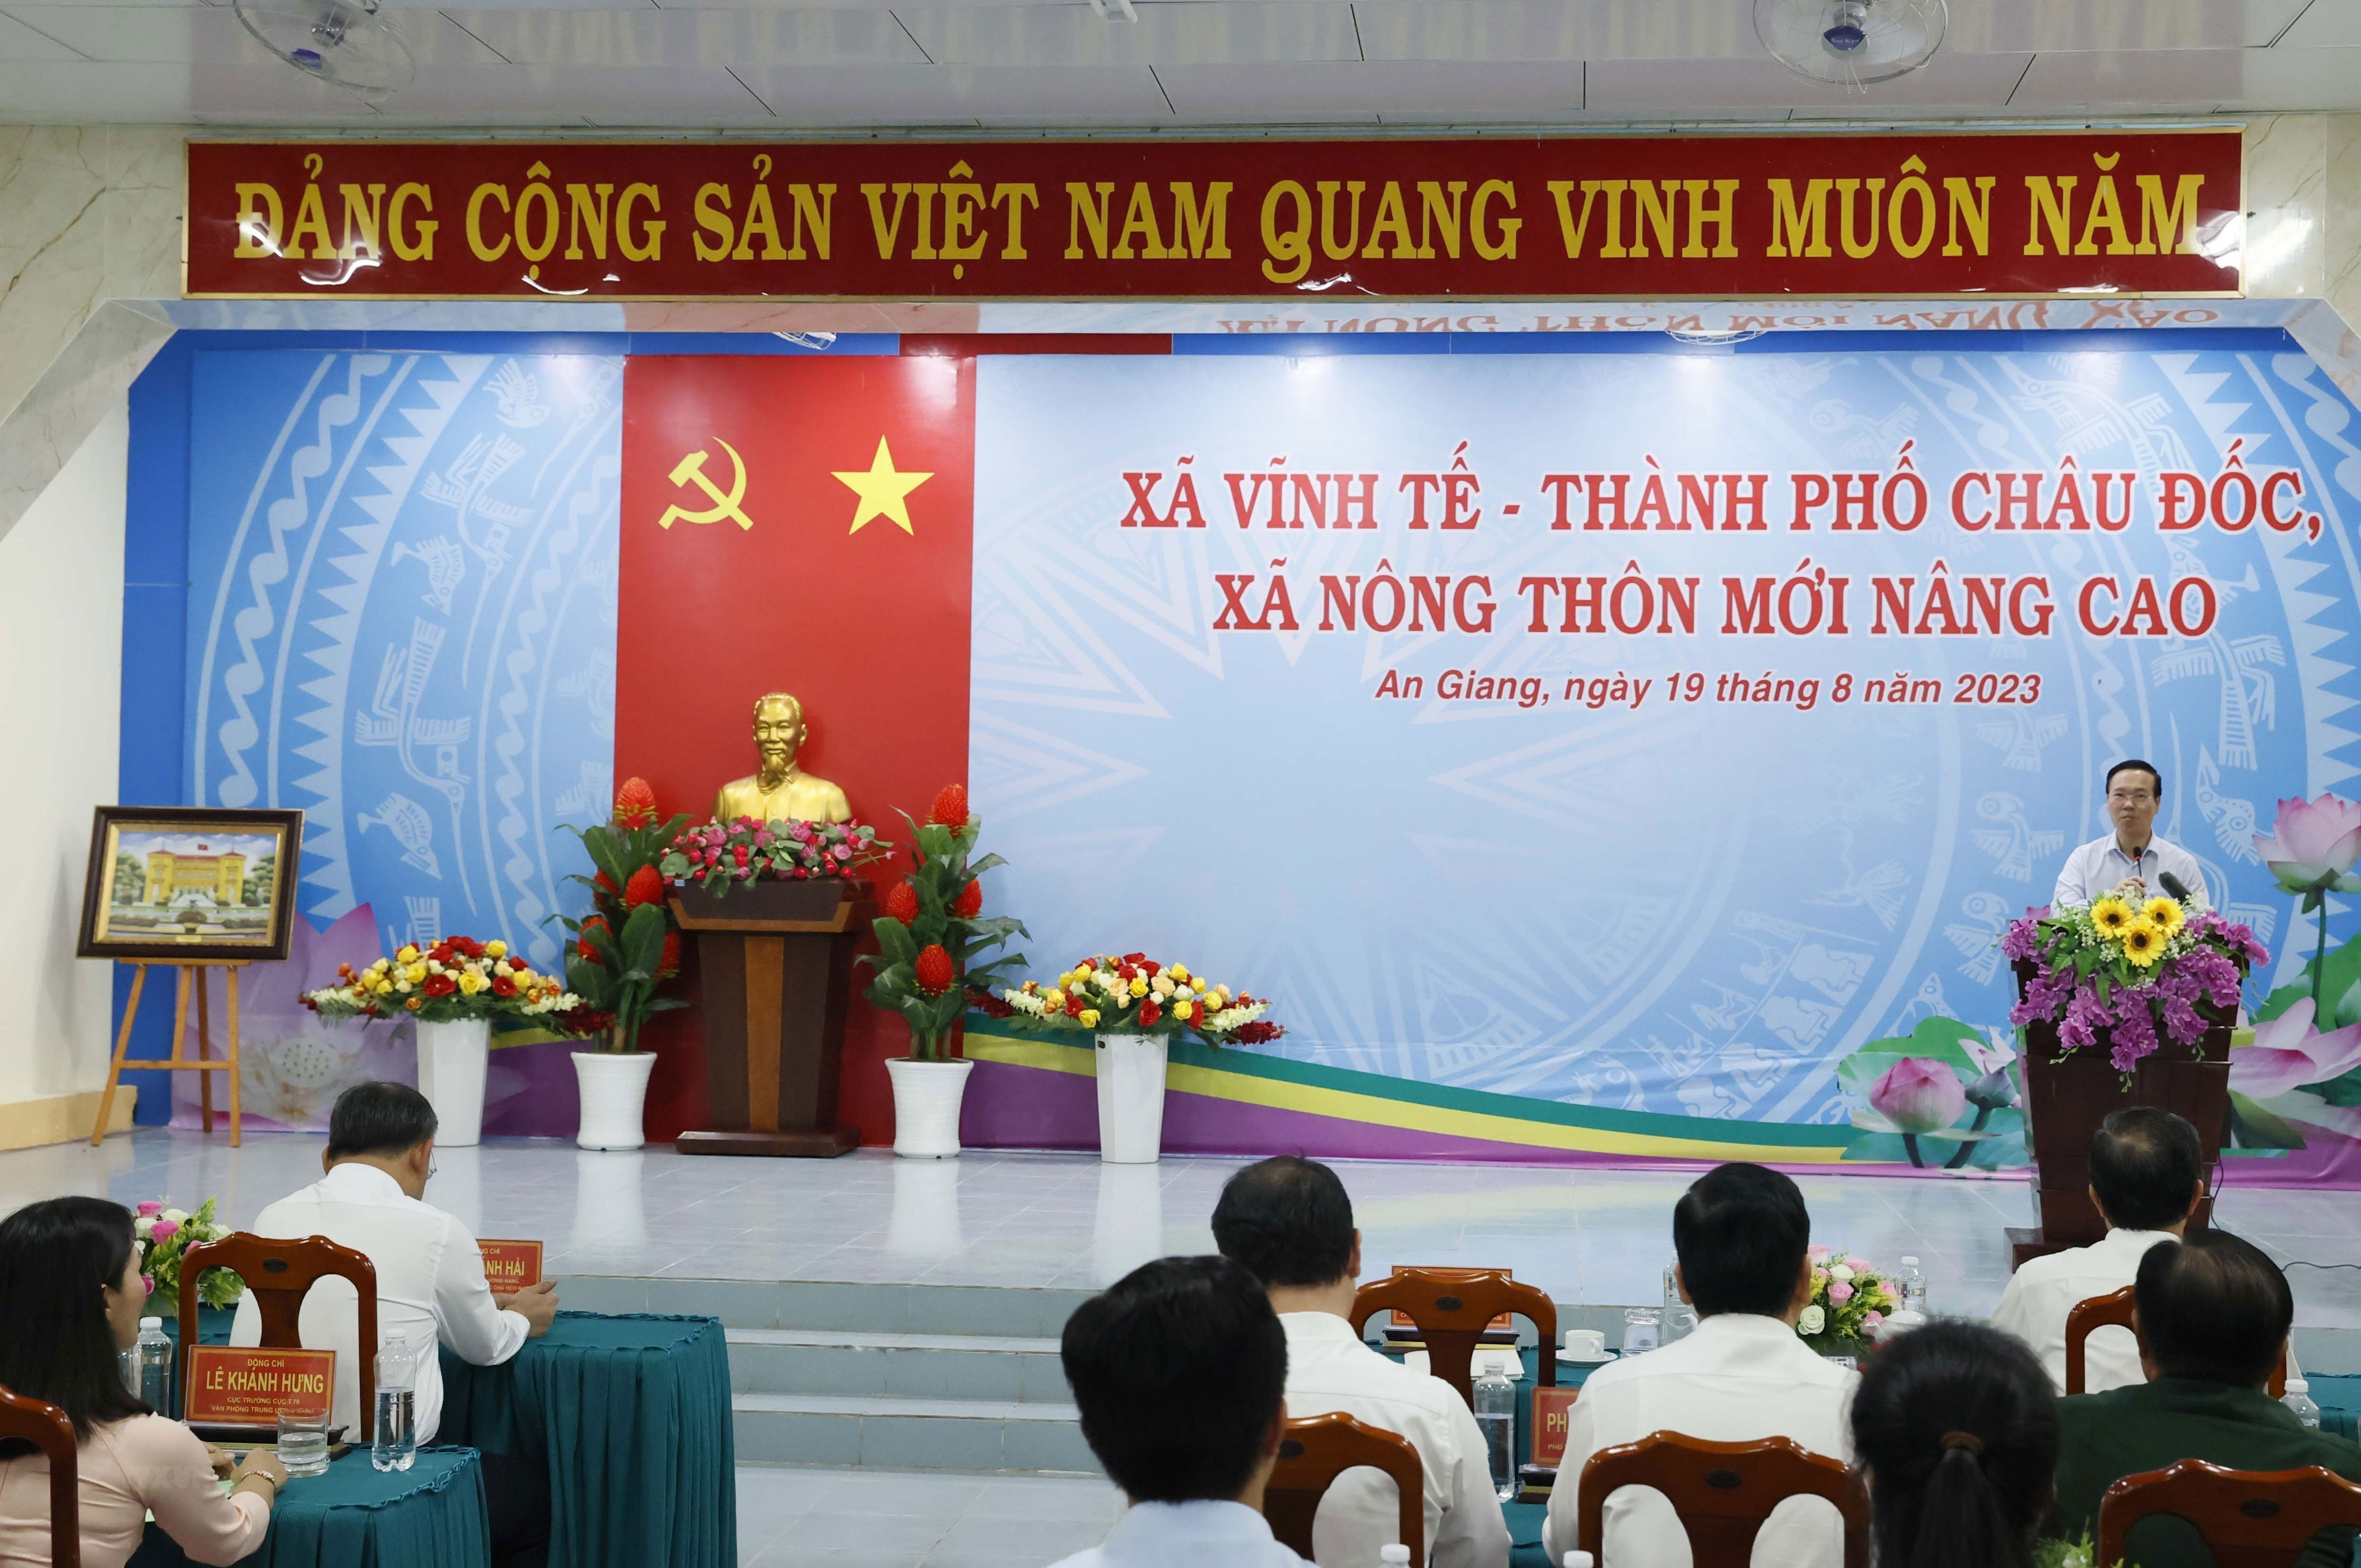 Chủ tịch nước thăm xã nông thôn mới nâng cao Vĩnh Tế ở An Giang